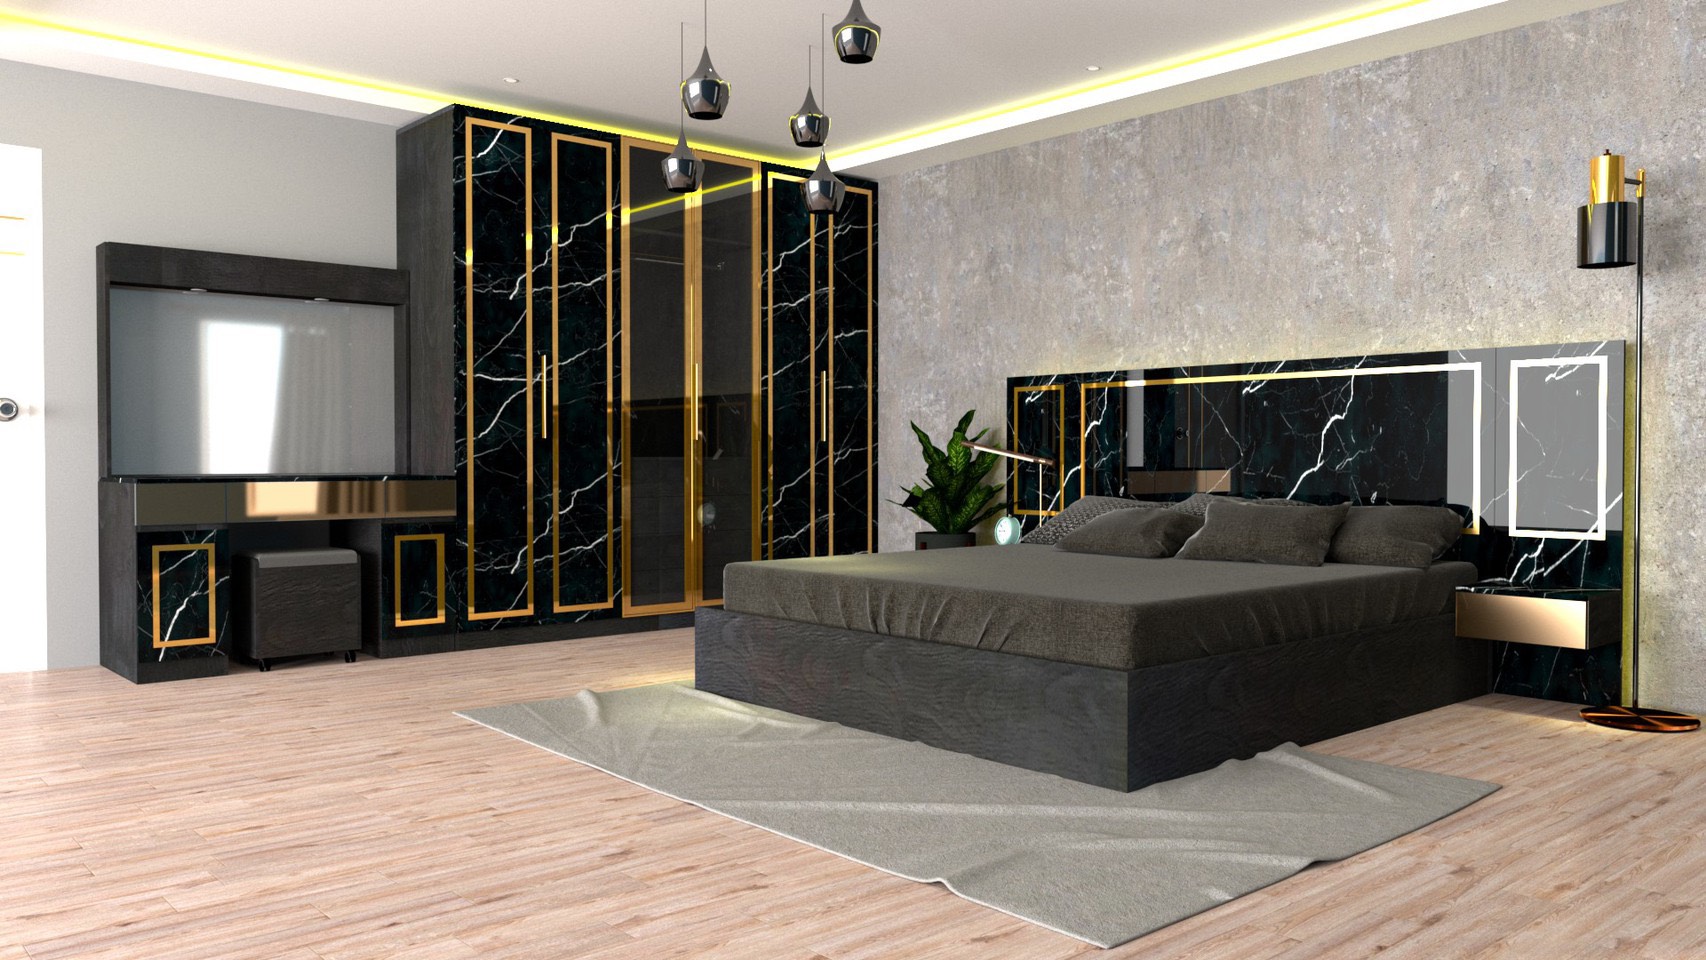 RF Furniture ชุดห้องนอน 6ฟุต รุ่น Jessica B ( เตียง 6ฟุต +ตู้หัวเตียง 2ข้าง+โต๊ะแป้ง 120 ซม.+ตู้เสื้อผ้า 2.40ม.+ที่นอนสปริง 6ฟุต ) Bedroom Set สี AG/DM/GL